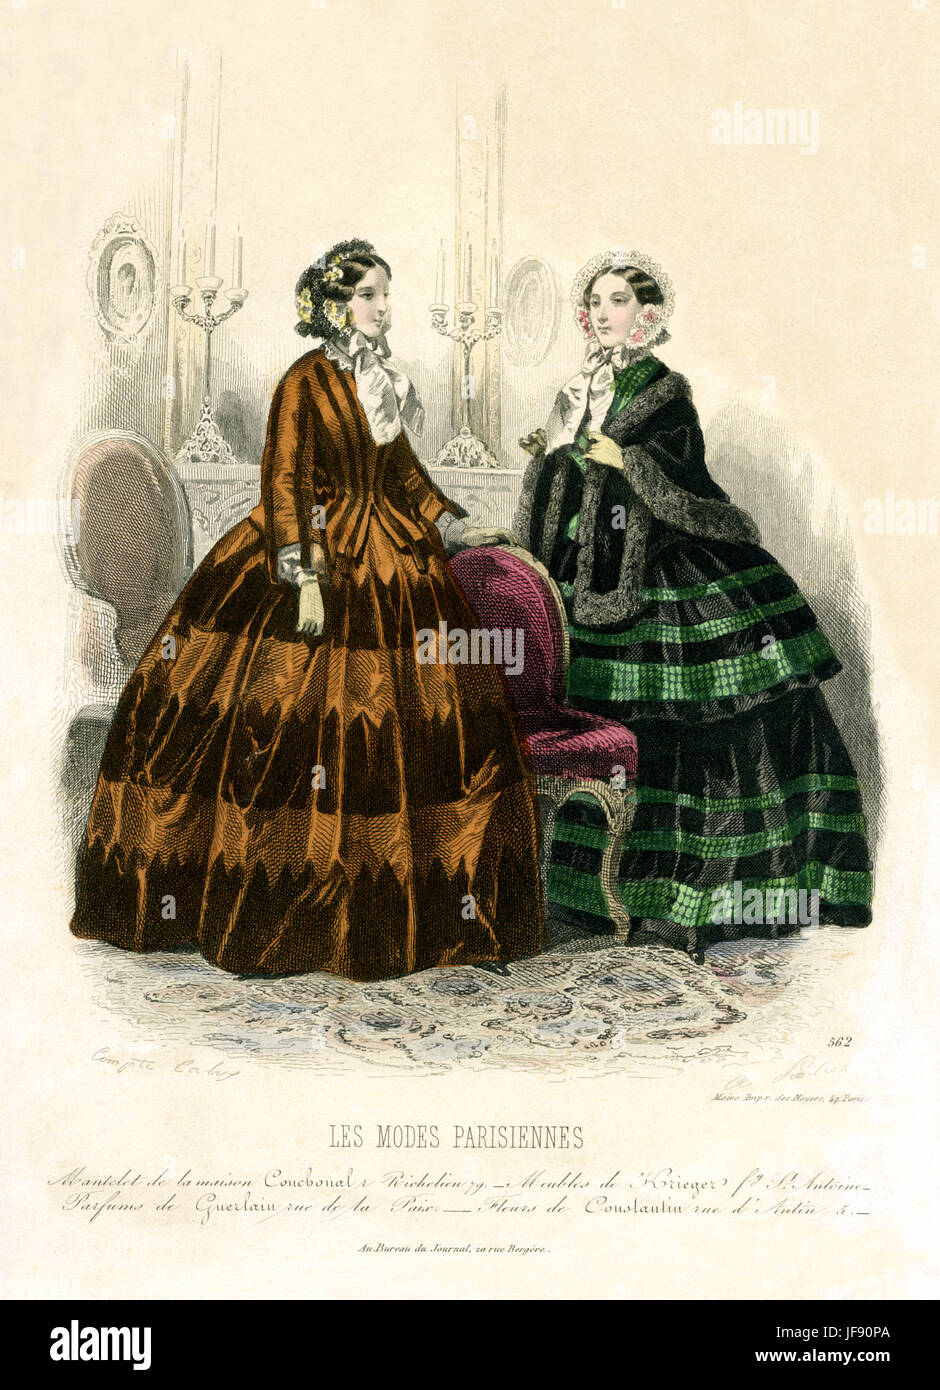 La mode Parisienne, 19e siècle. Deux femmes en bonnets attachés avec du  ruban et décorées de fleurs. Jupe plein robes / veste assortie. Une femme  porte garnis de fourrure châle. Les modes